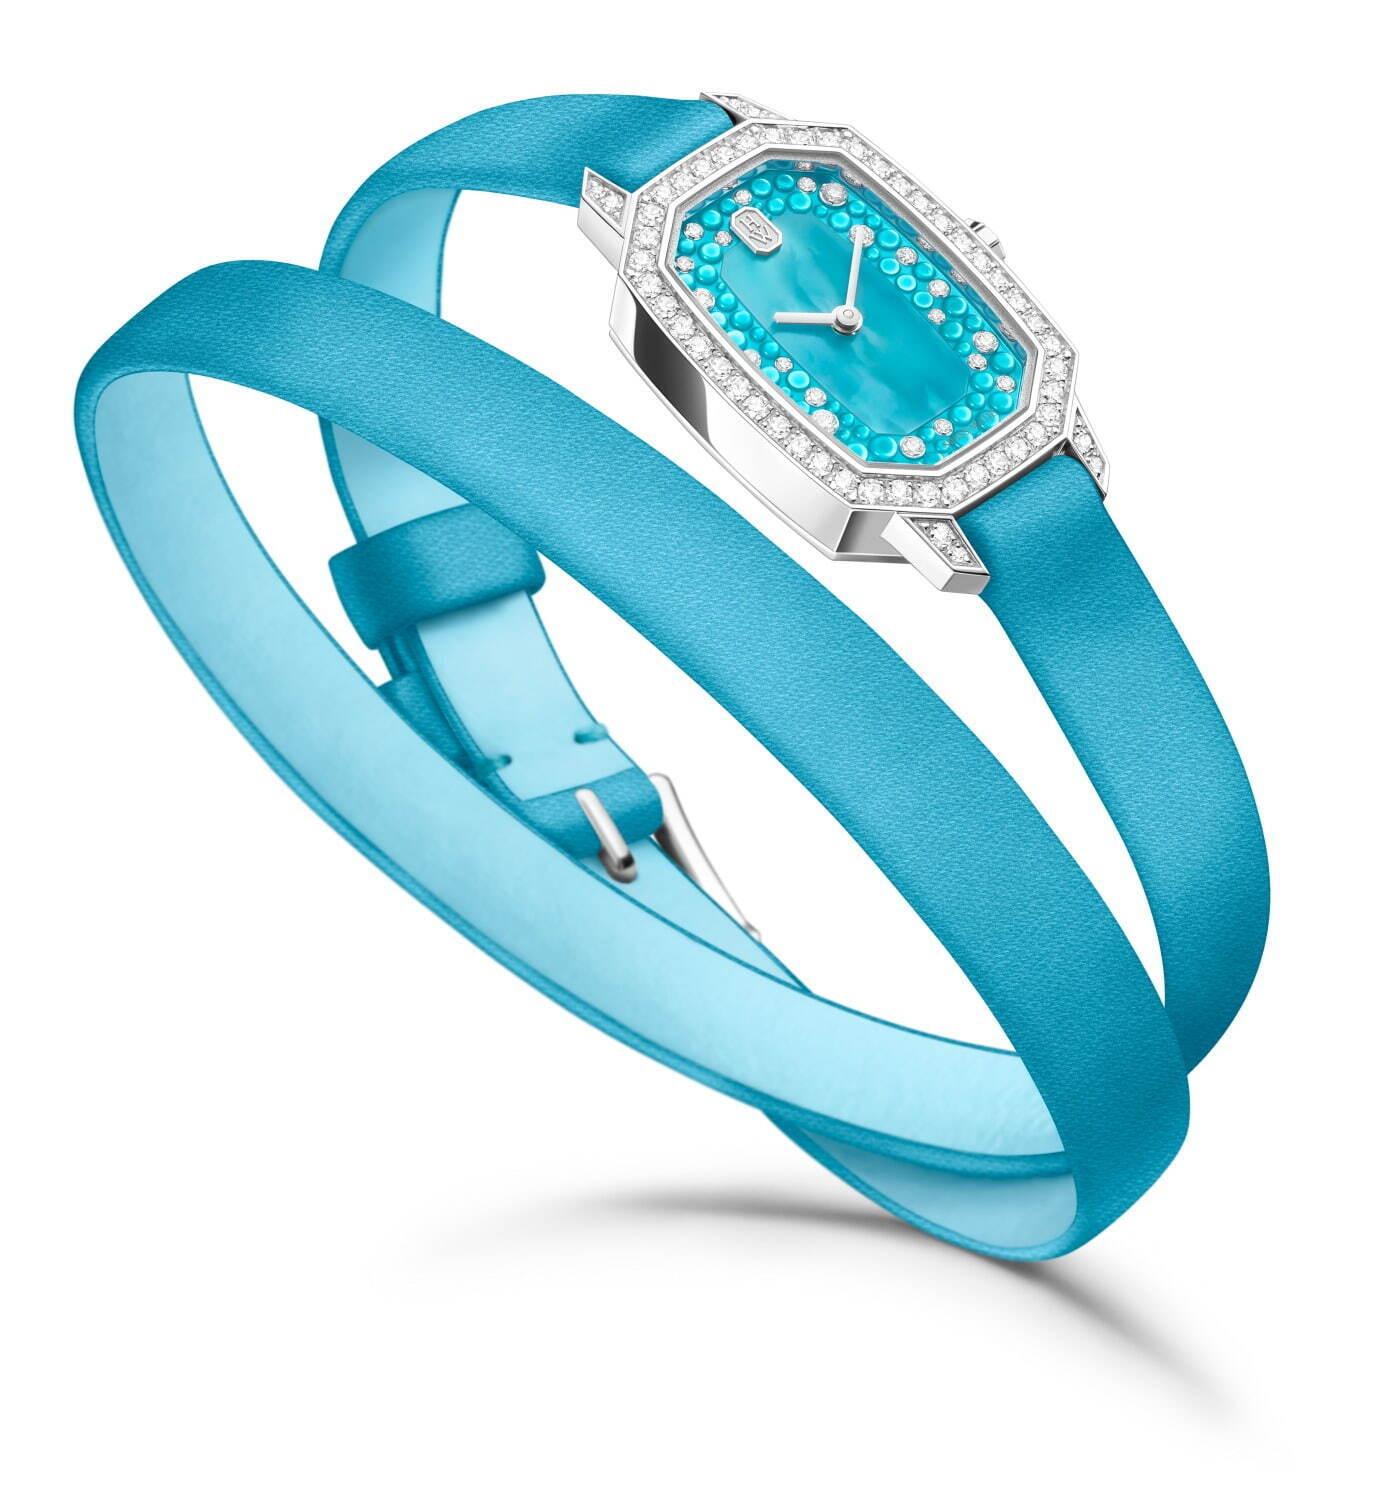 ハリー・ウィンストン、ダイヤモンドの“エメラルドカット”から着想した腕時計にヴィヴィッドな新色 コピー